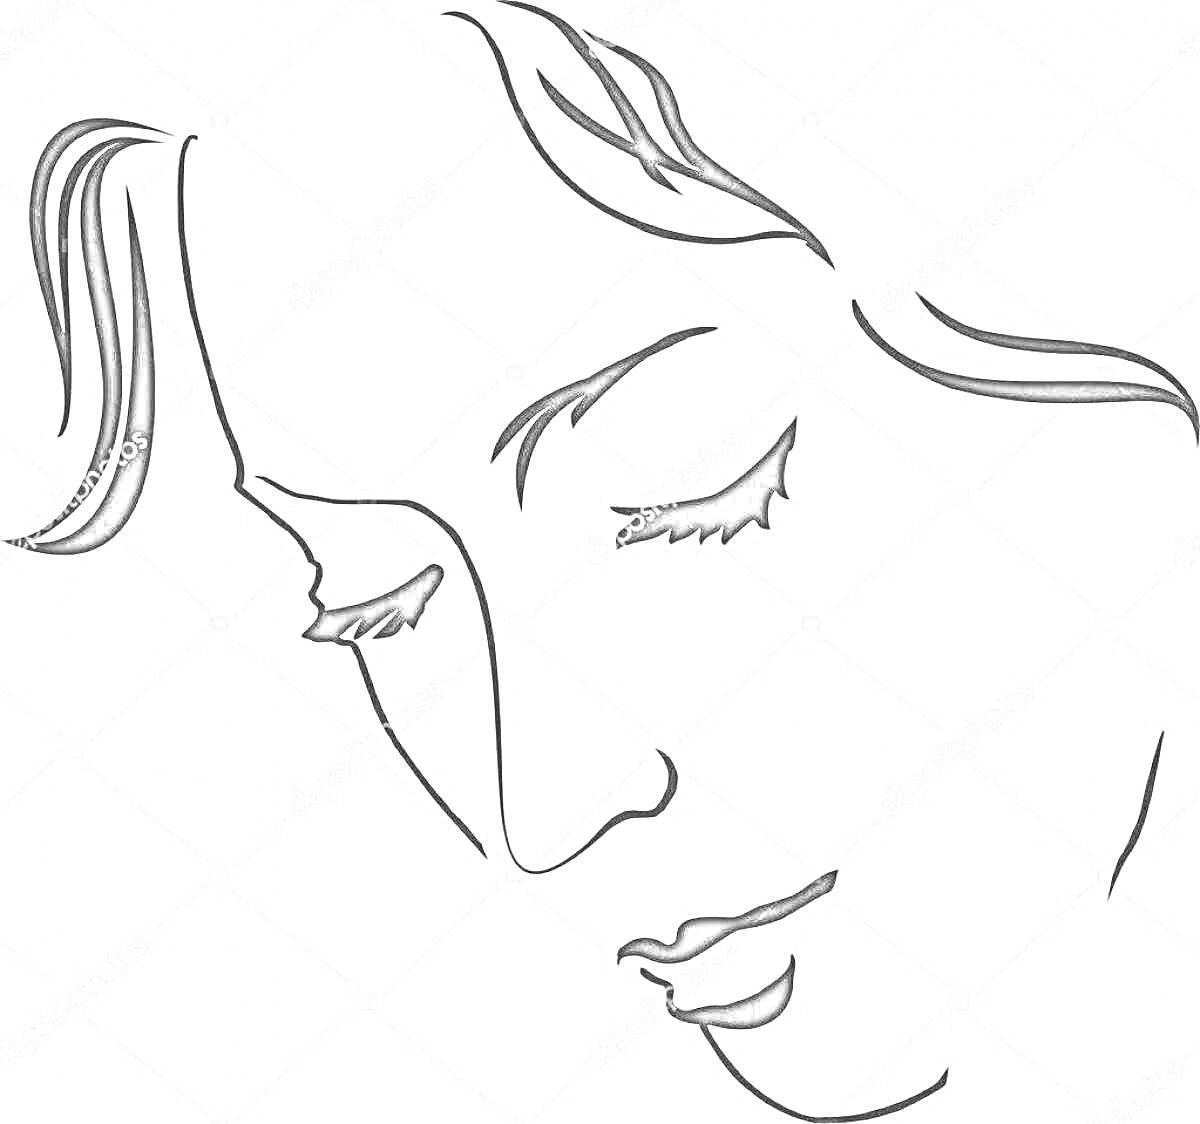 Раскраска Лицо женщины в профиль со спущенными веками и закрытыми глазами, стилизованное изображение с акцентом на плавные линии волос и ресниц